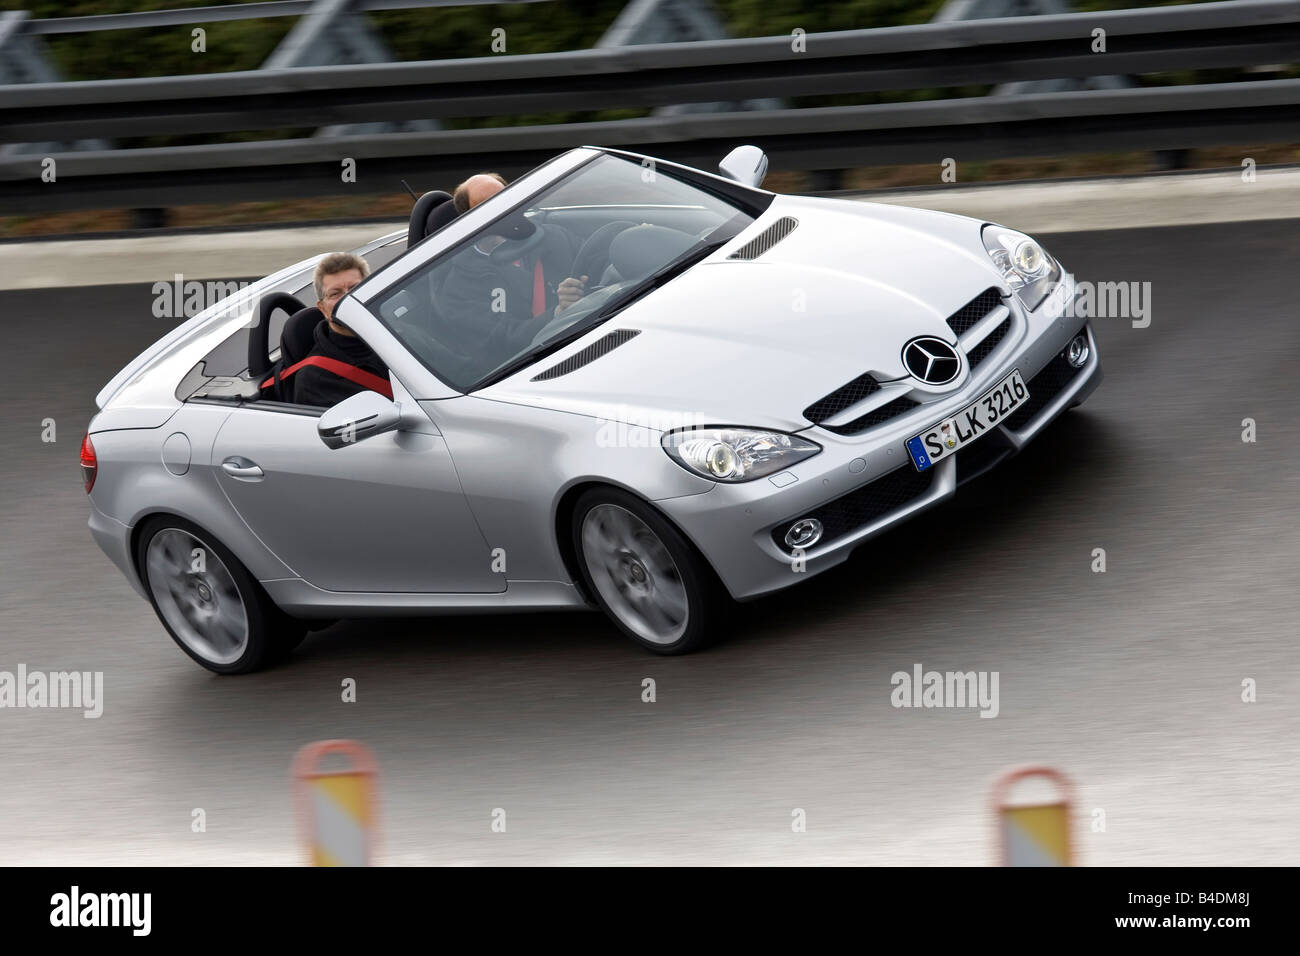 Mercedes SLK, modello anno 2008-, argento, guida, diagonale dalla parte anteriore, vista frontale, test in pista, geöffnetes / Verdeck openes Foto Stock